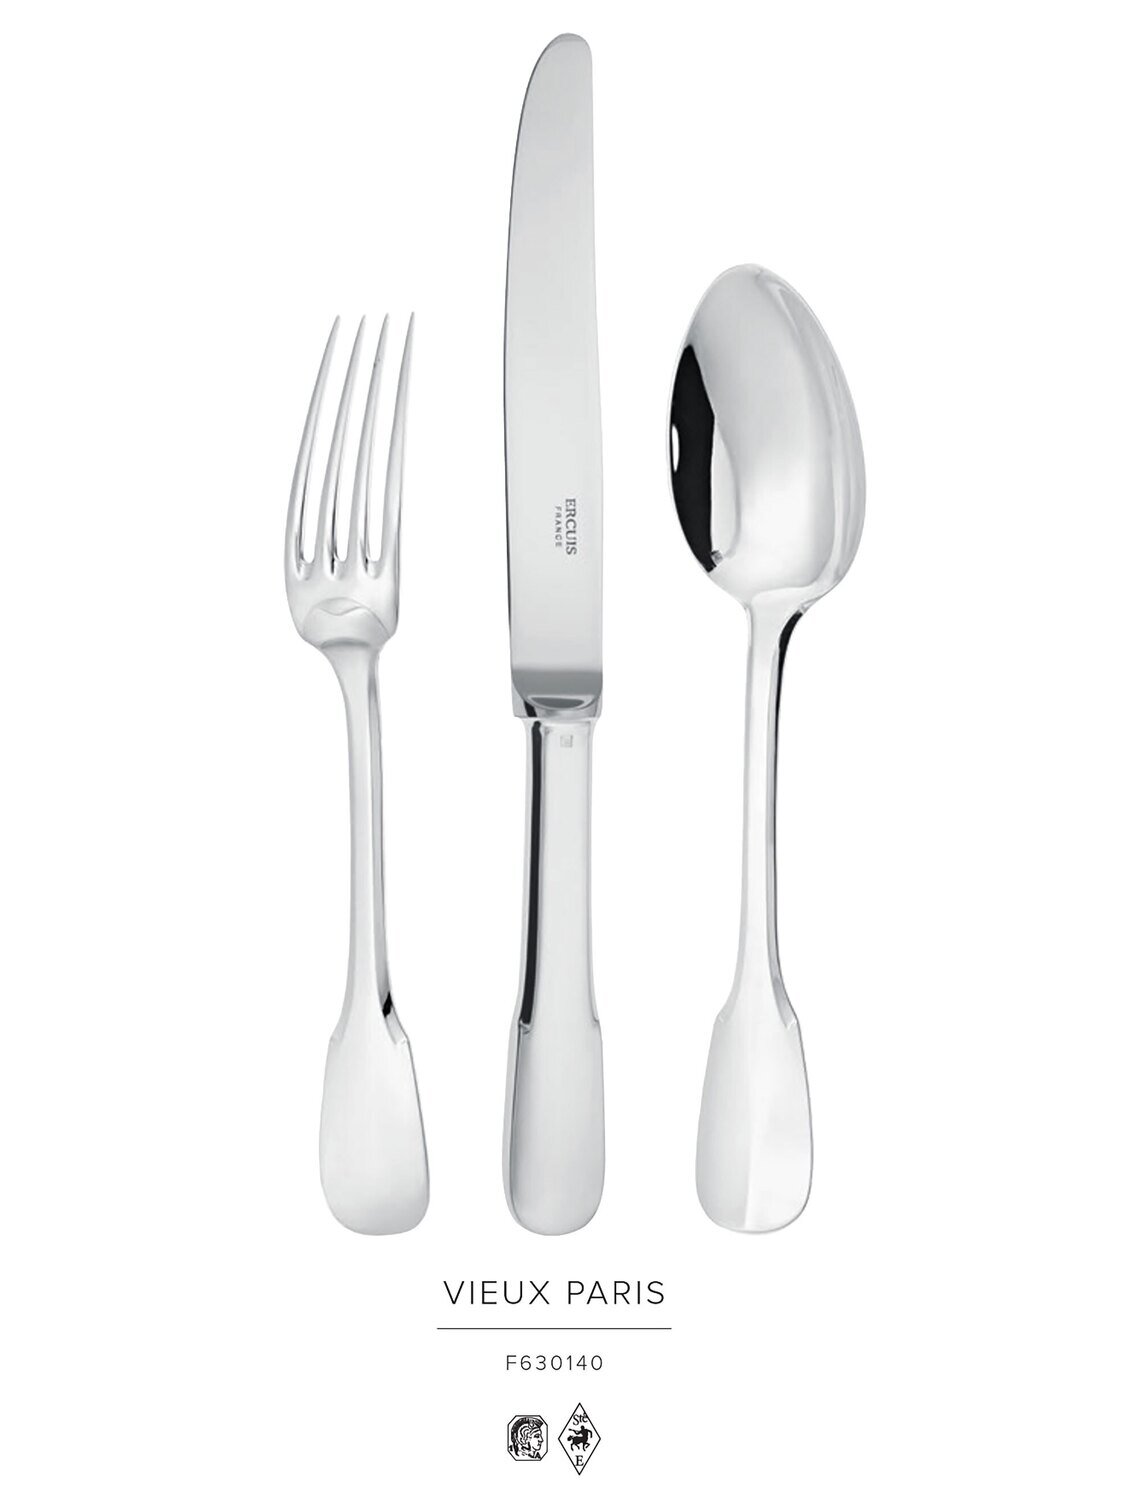 Ercuis Vieux Paris Serving Spoon Sterling Silver F630140-41